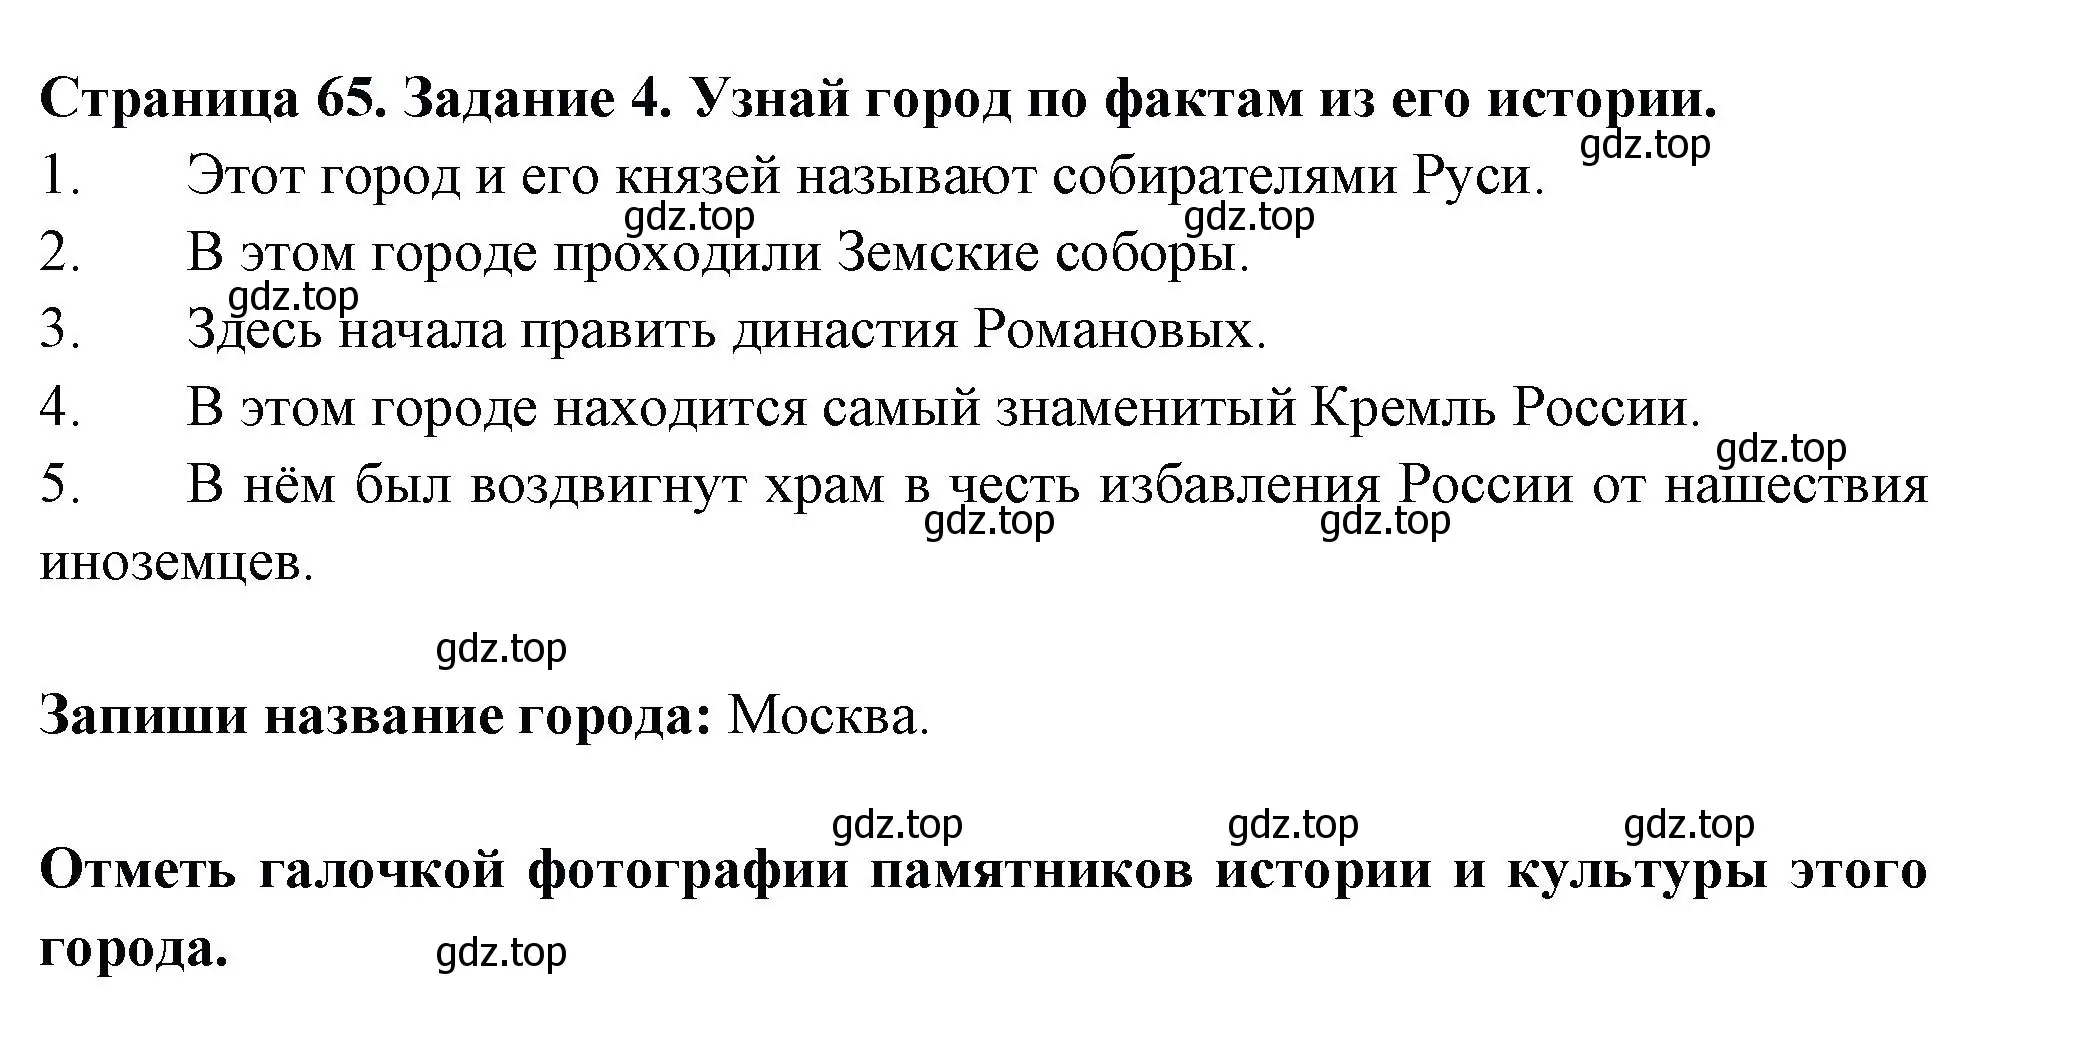 Решение номер 4 (страница 65) гдз по окружающему миру 4 класс Плешаков, Крючкова, проверочные работы